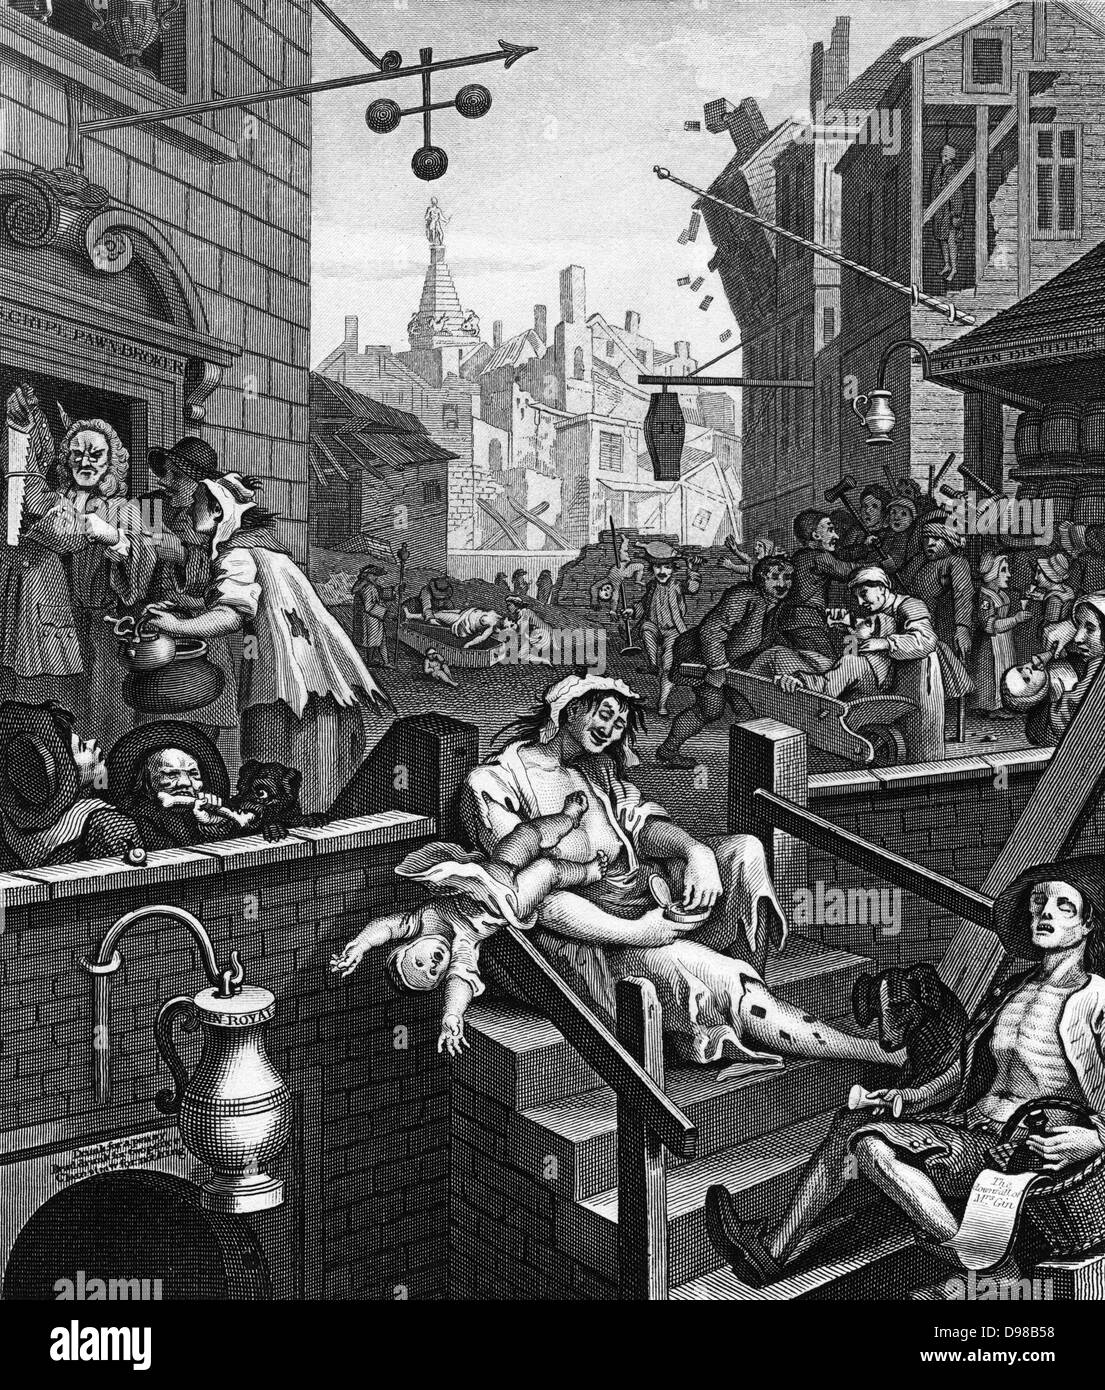 Gin Lane est un imprimer publié en 1751 par William Hogarth (1697 - 1764) un peintre, graveur, à l'appui de ce qui allait devenir la Loi sur Gin. Il décrit les méfaits de la consommation de gin Banque D'Images